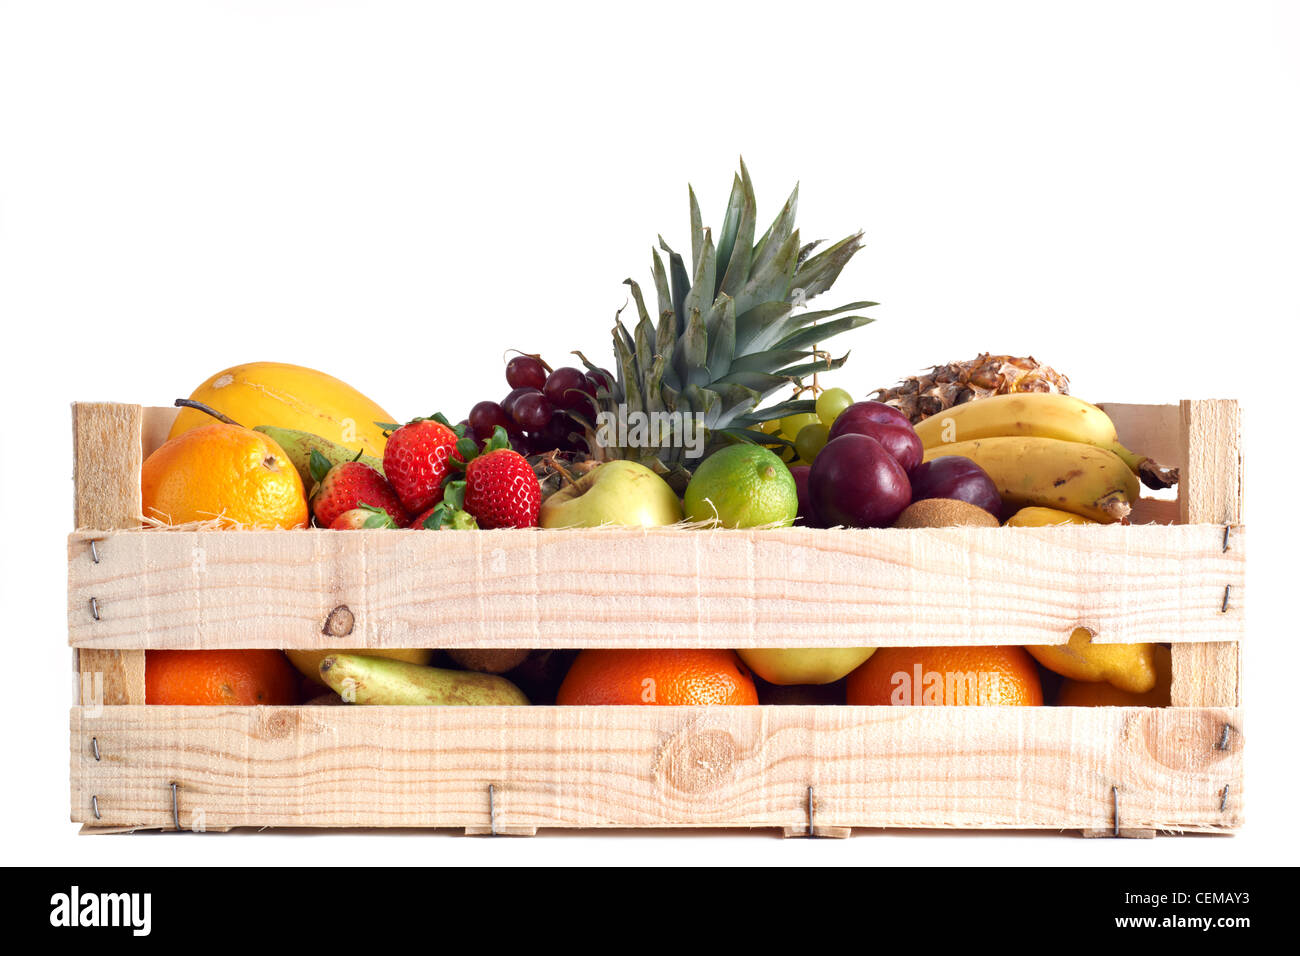 Divers types de fruits stockés dans la boîte en bois sur fond blanc Banque D'Images